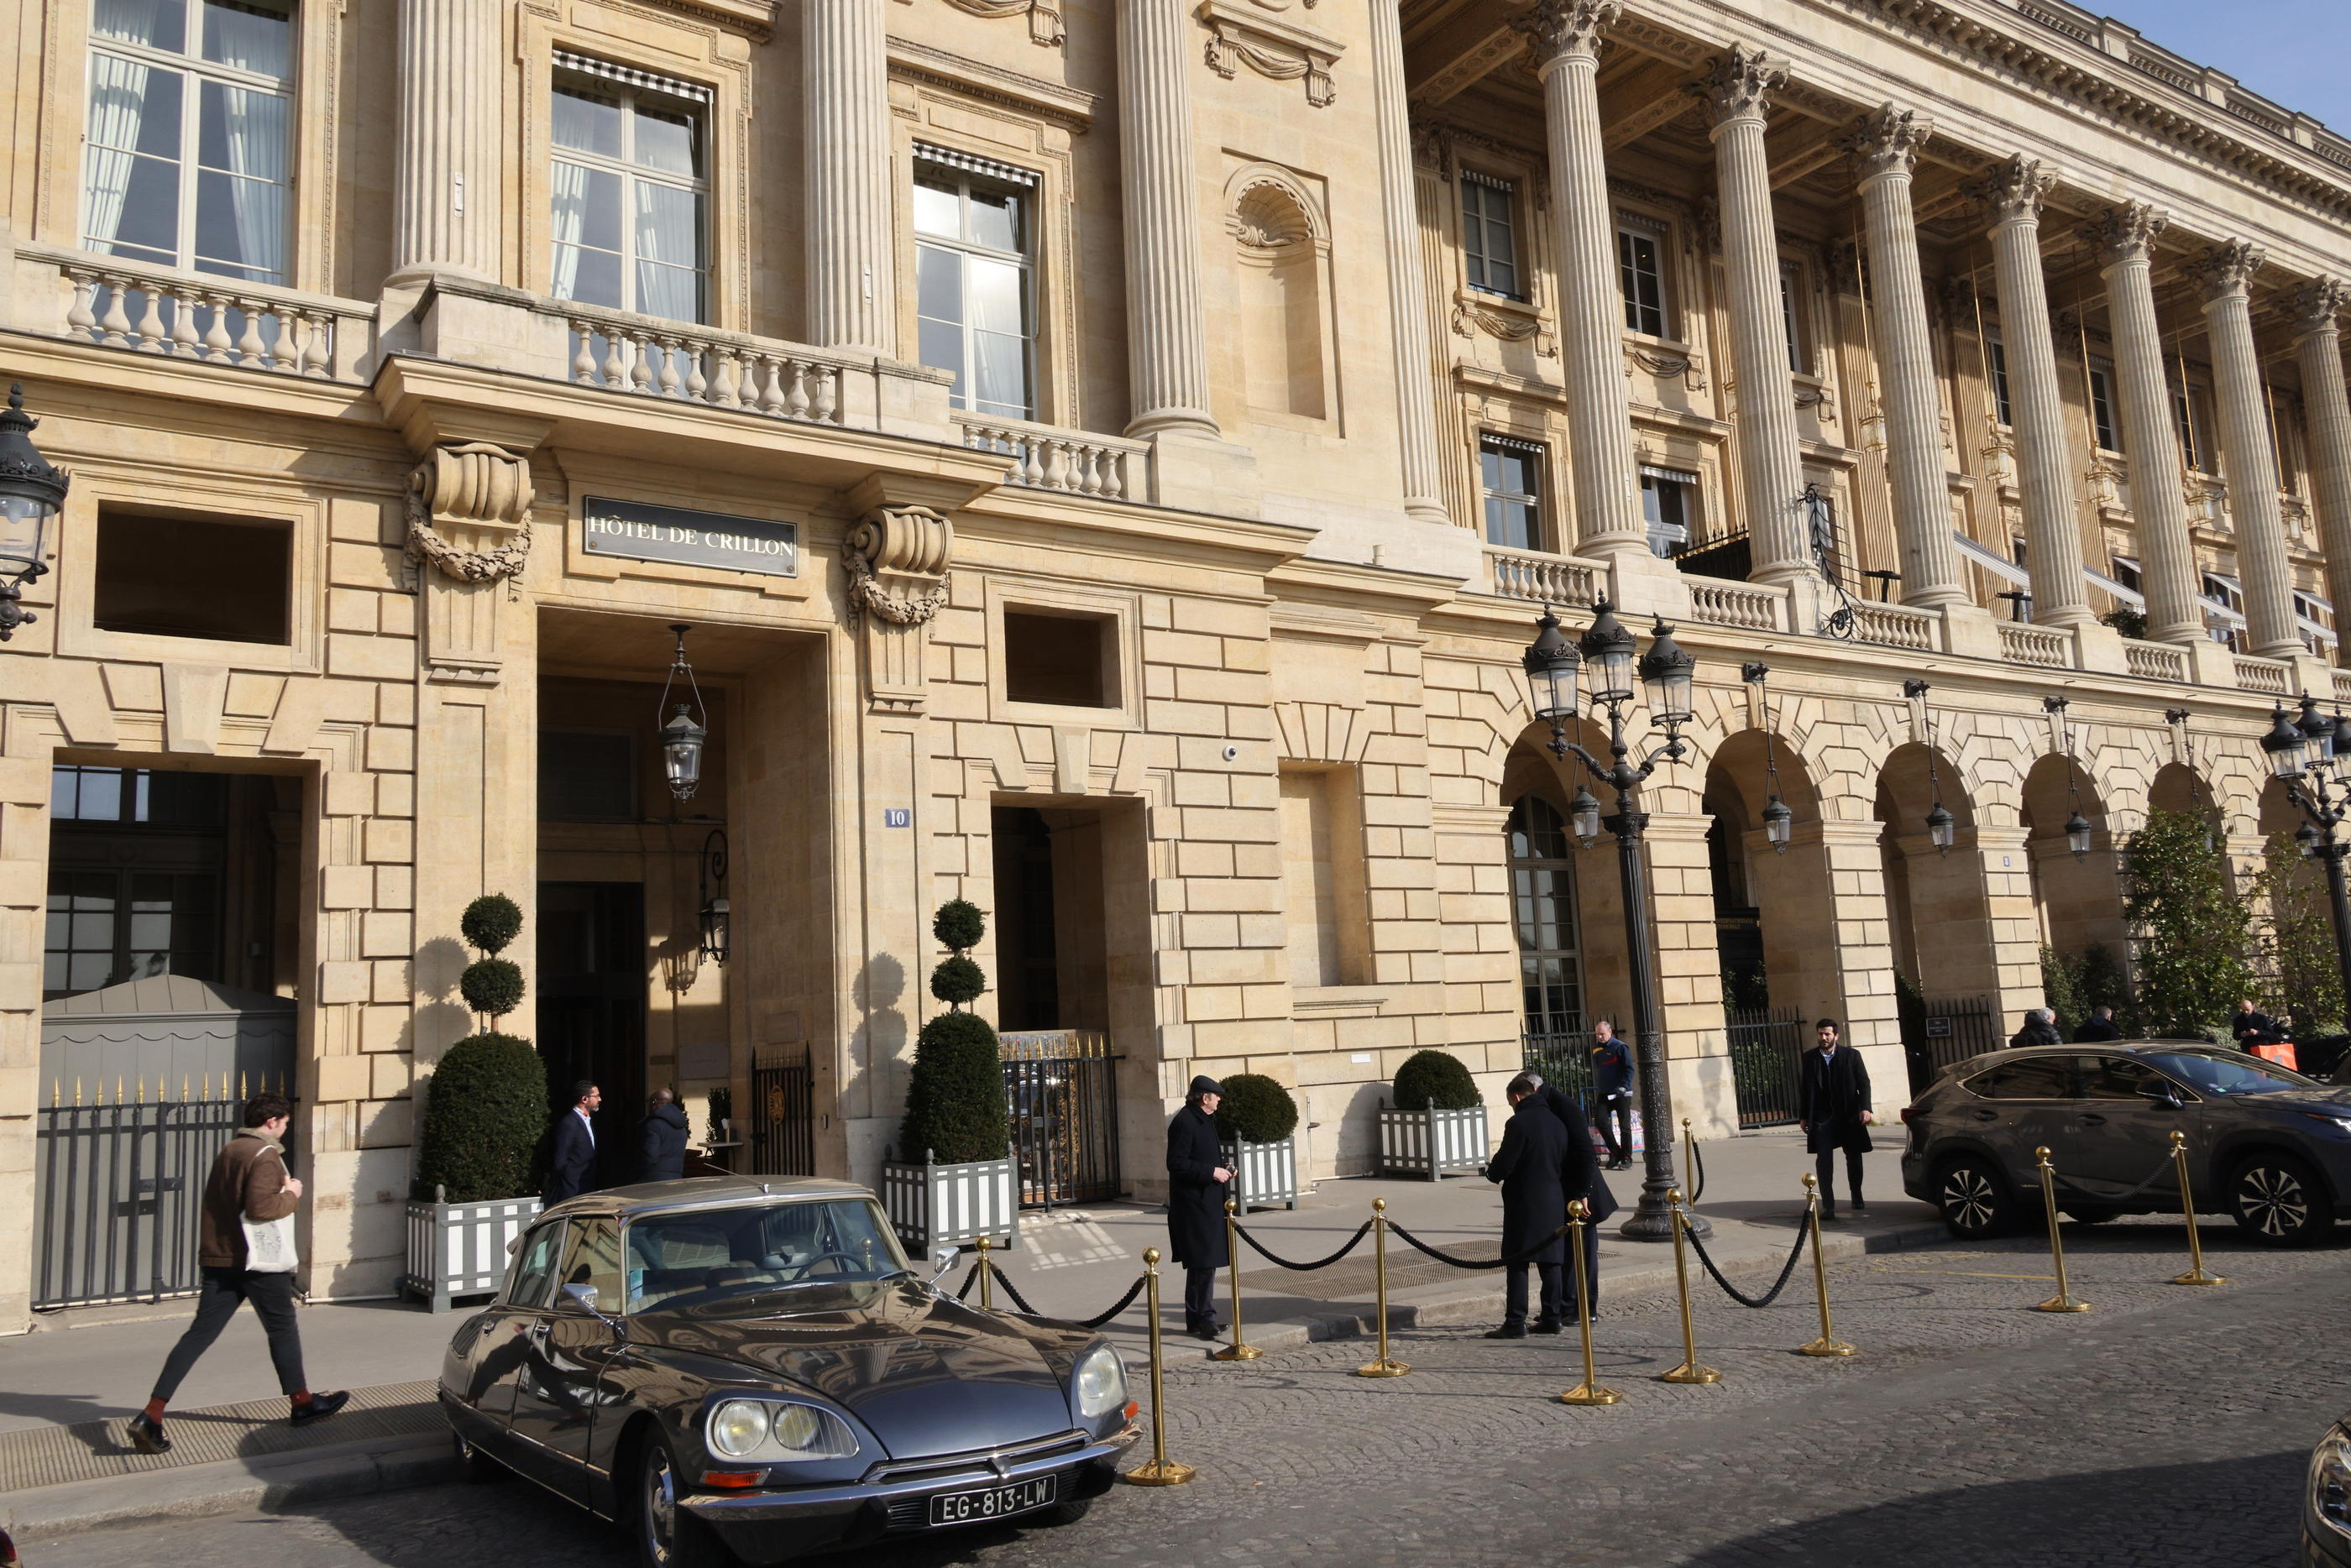 L'Hôtel de Crillon partage sa façade à colonnades érigée en 1758 avec ses voisins de la place de la Concorde, l’Automobile club de France et l’hôtel de Coislin. LP/Delphine Goldsztejn